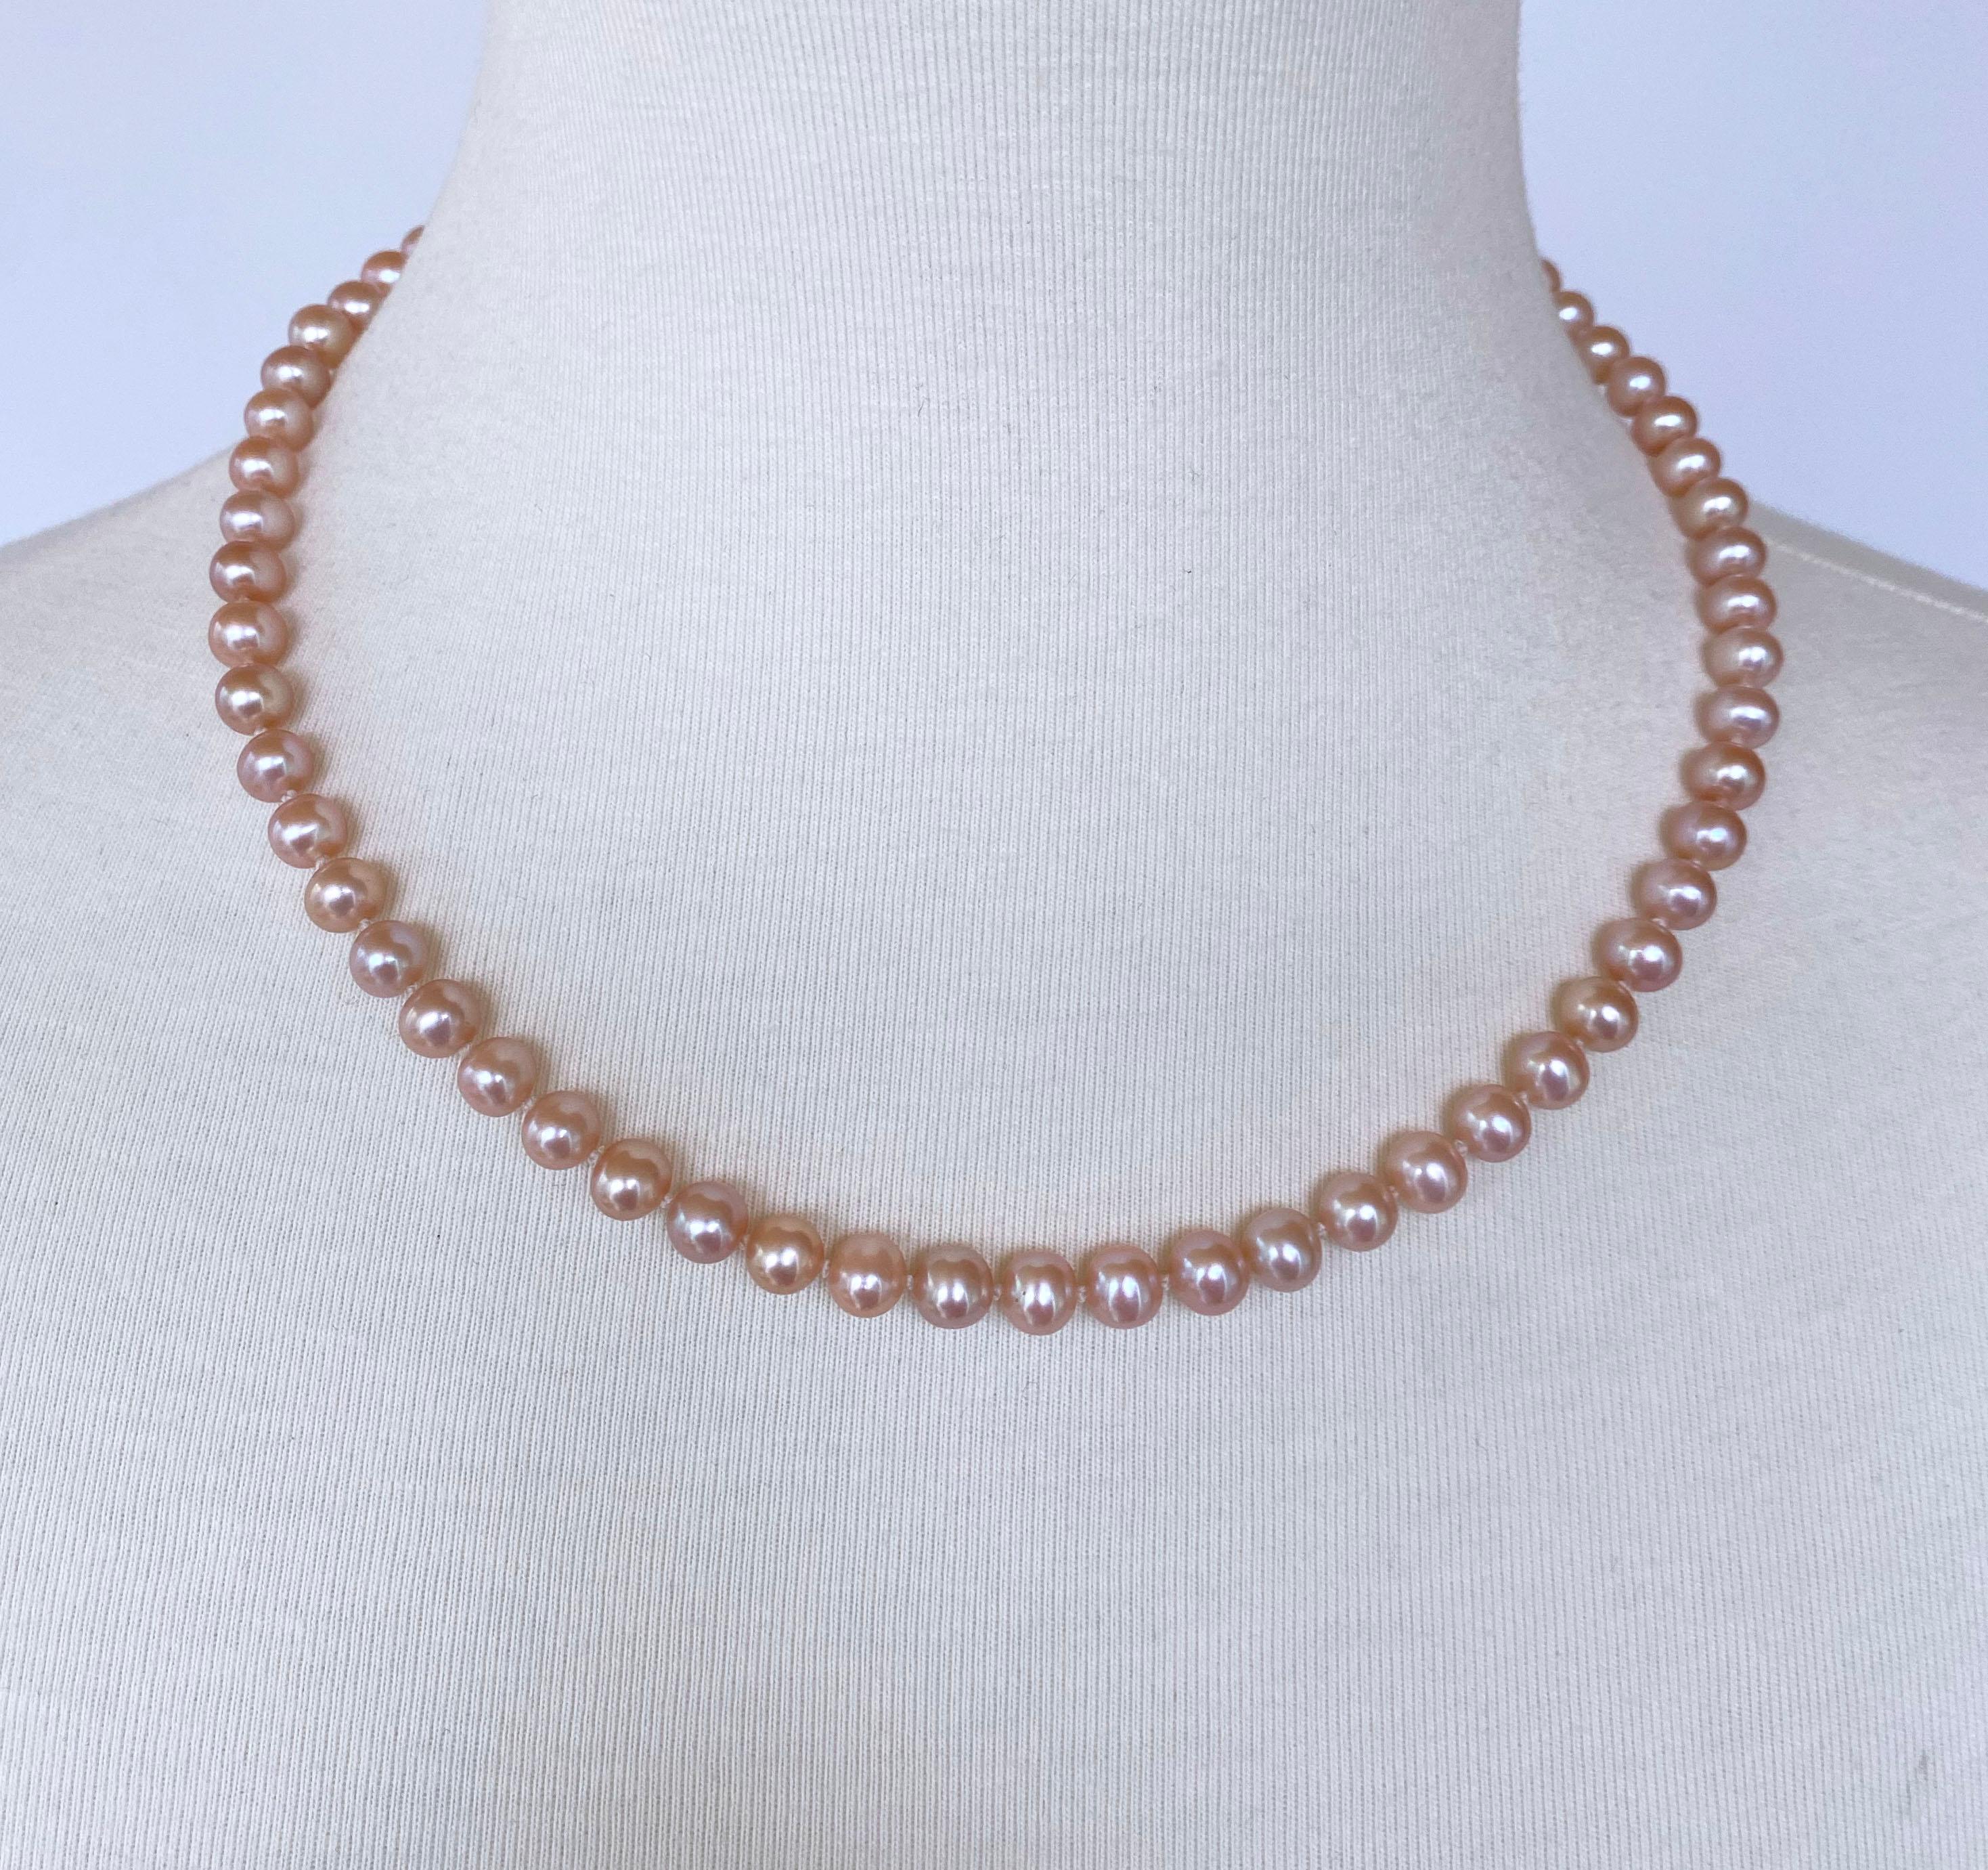 Schlichte und doch auffällige Halskette von Marina J aus Los Angeles. Diese Unisex-Halskette besteht aus natürlichen rosafarbenen Perlen, die wild schillern und glänzen und bei Lichteinfall atemberaubende Orangen- und Pinktöne ausstrahlen. Mit einer